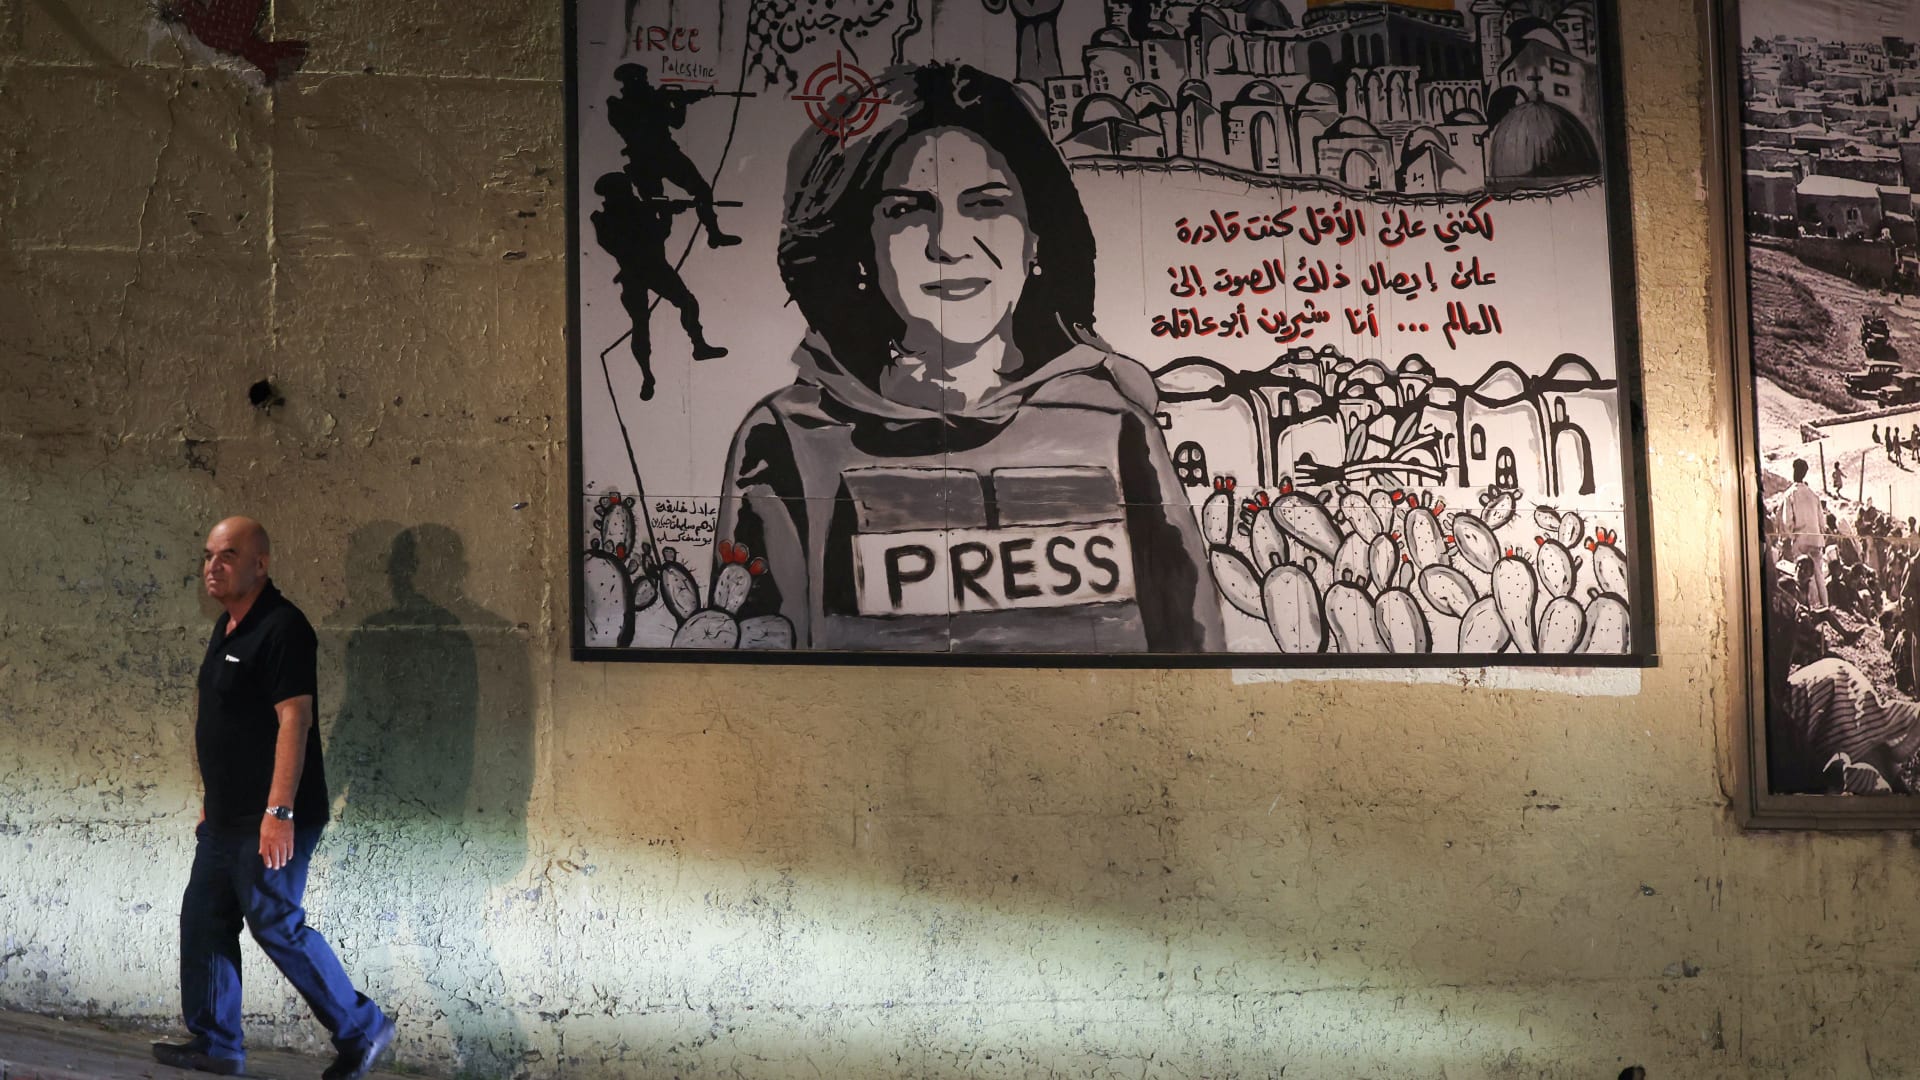 قناة "الجزيرة" تعلن رفع قضية مقتل شيرين أبو عاقلة إلى المحكمة الجنائية الدولية